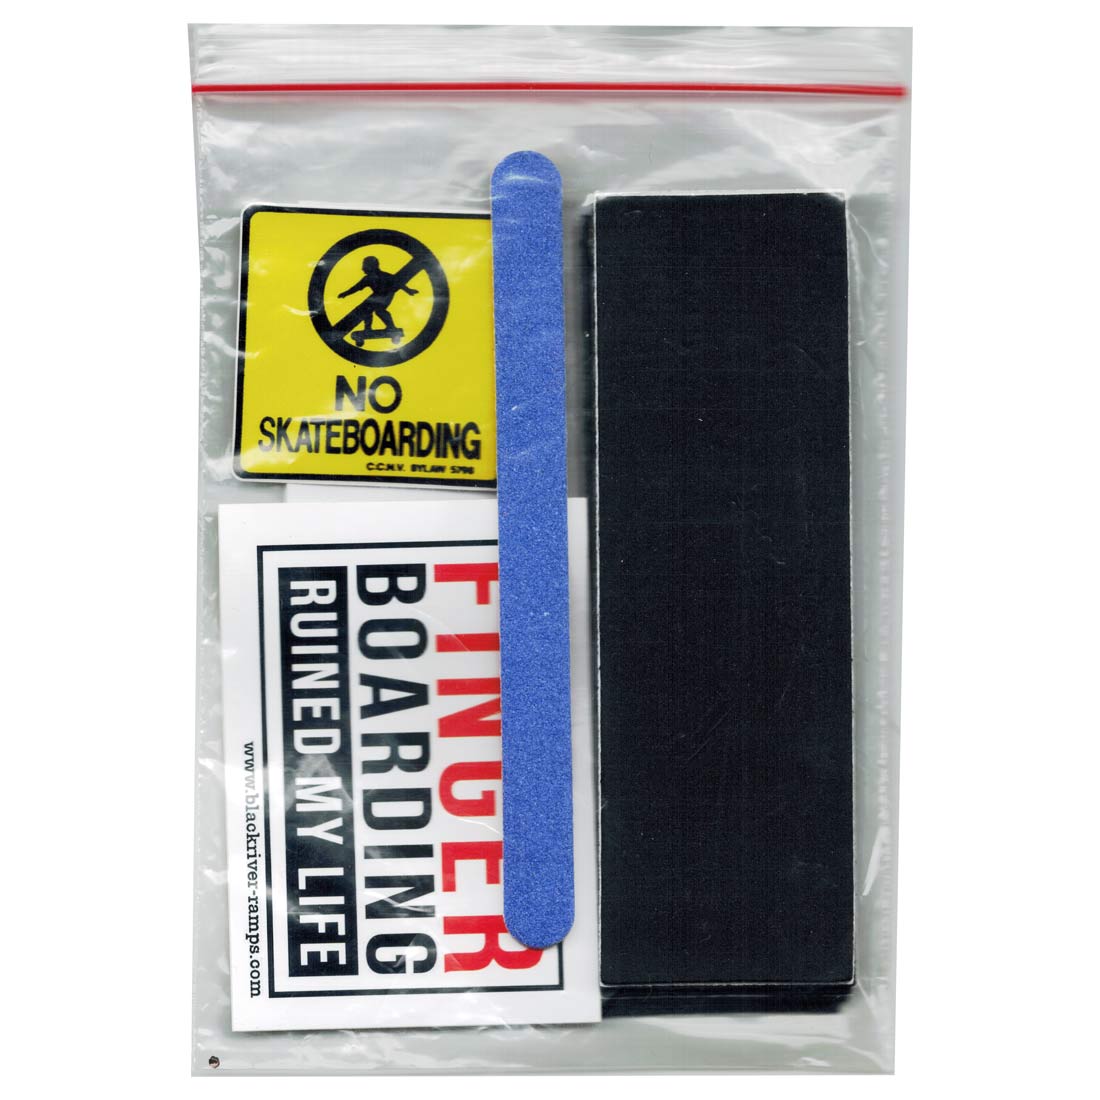 Pack of 12 Sheets JY-QM Fingerboard Foam Grip Tape 